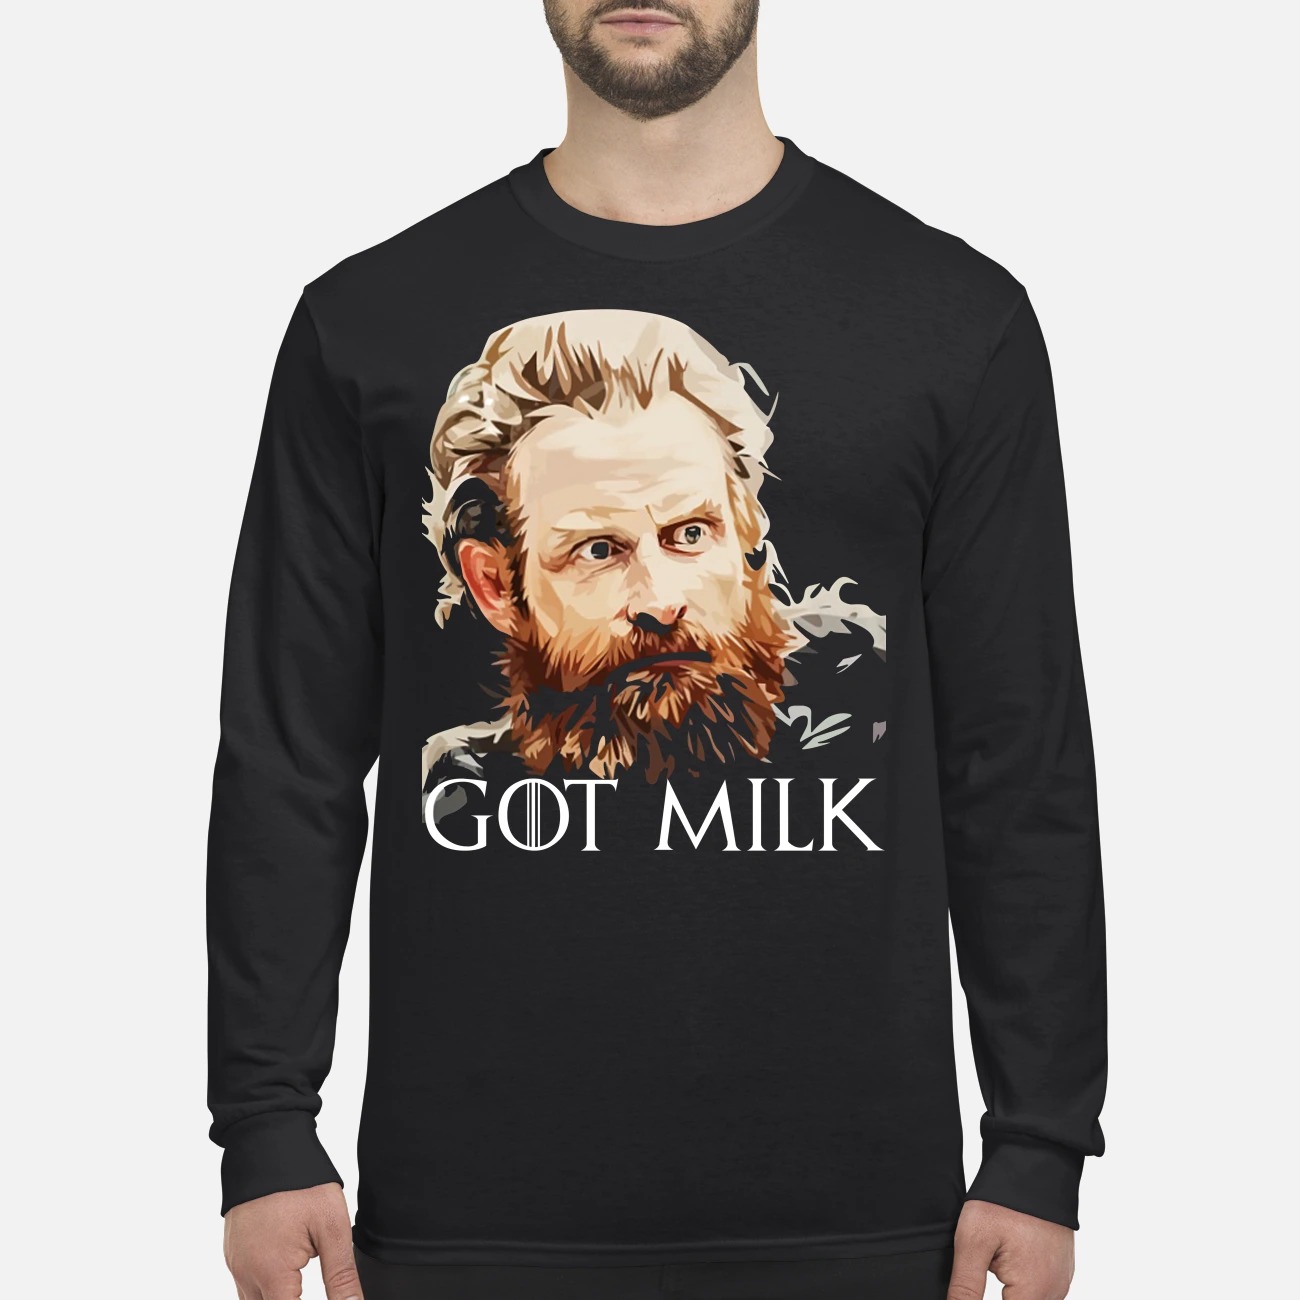 Tormund Giantsbane got milk men's long sleeved shirt